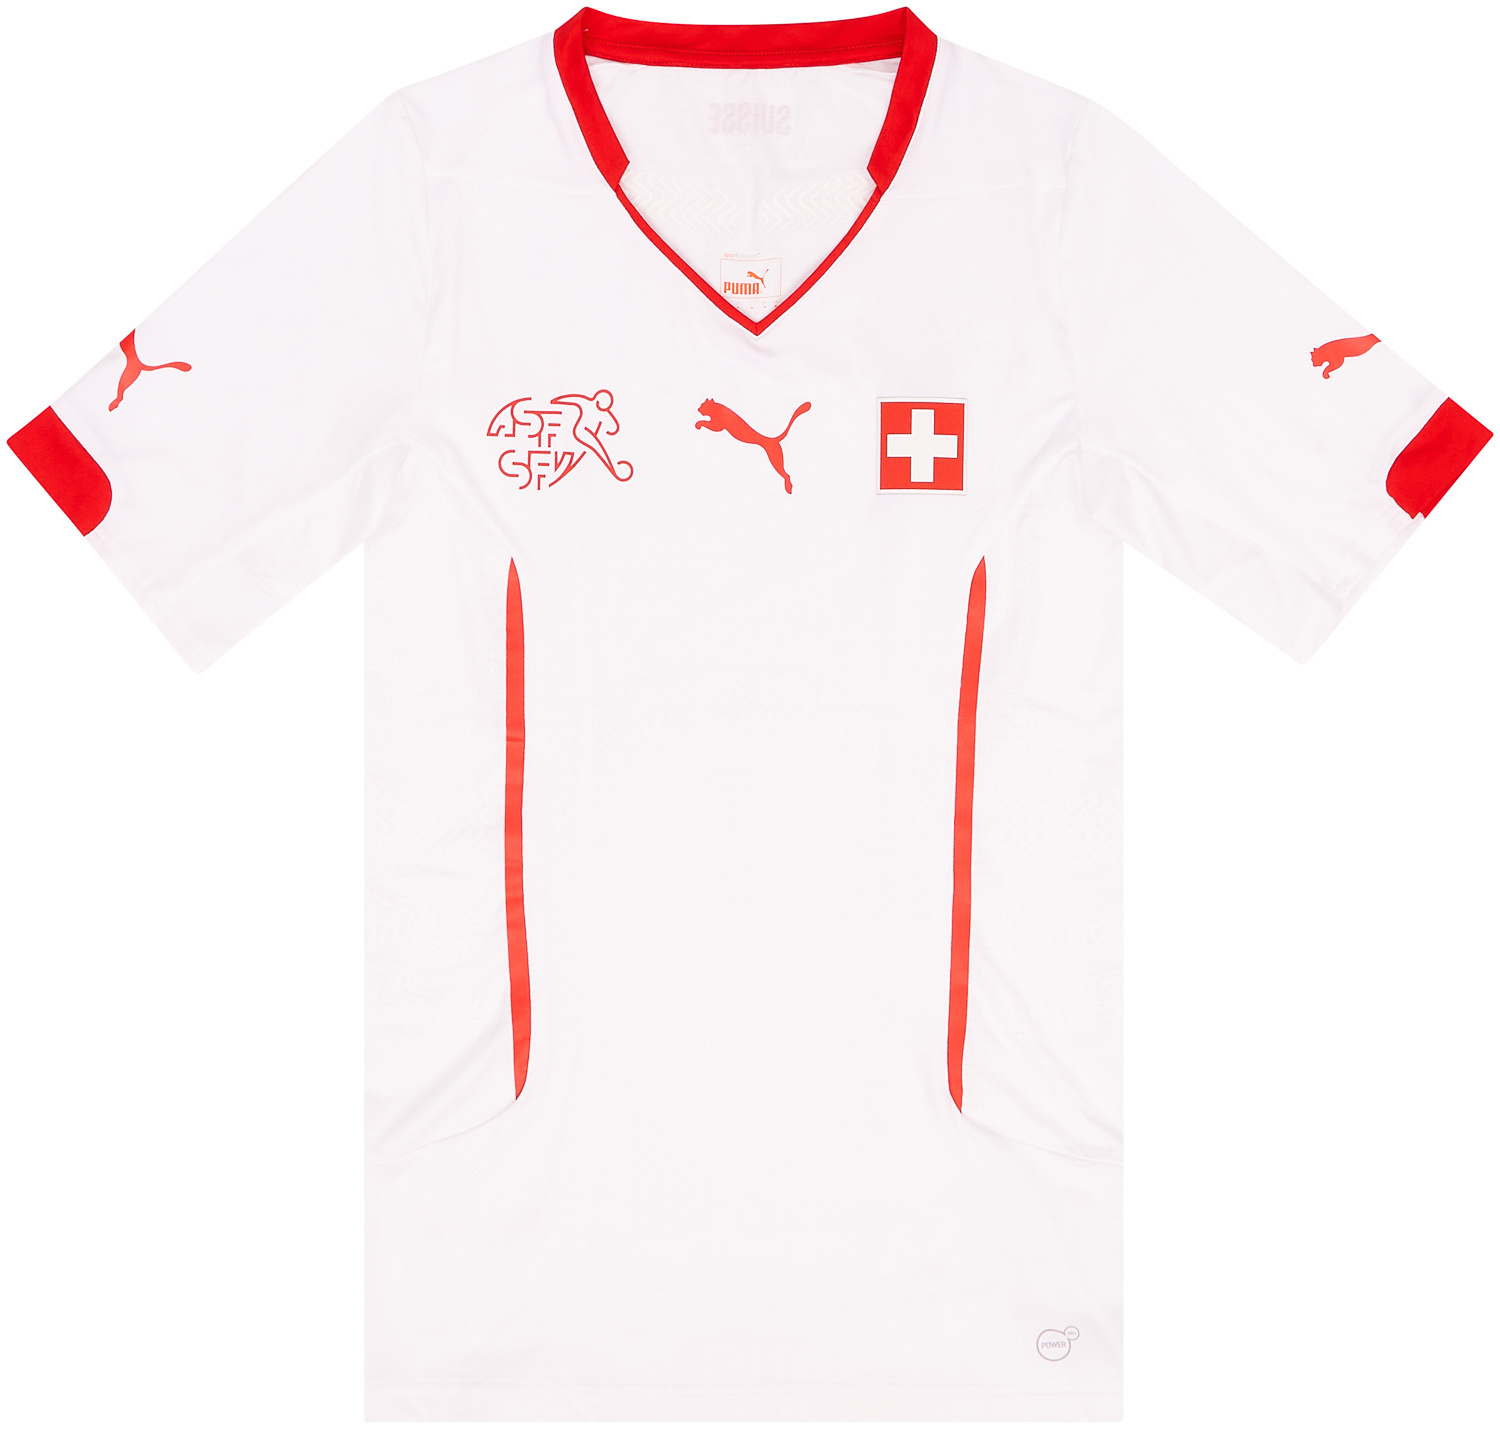 2014-15 Switzerland Player Issue Away Shirt - 9/10 - ()